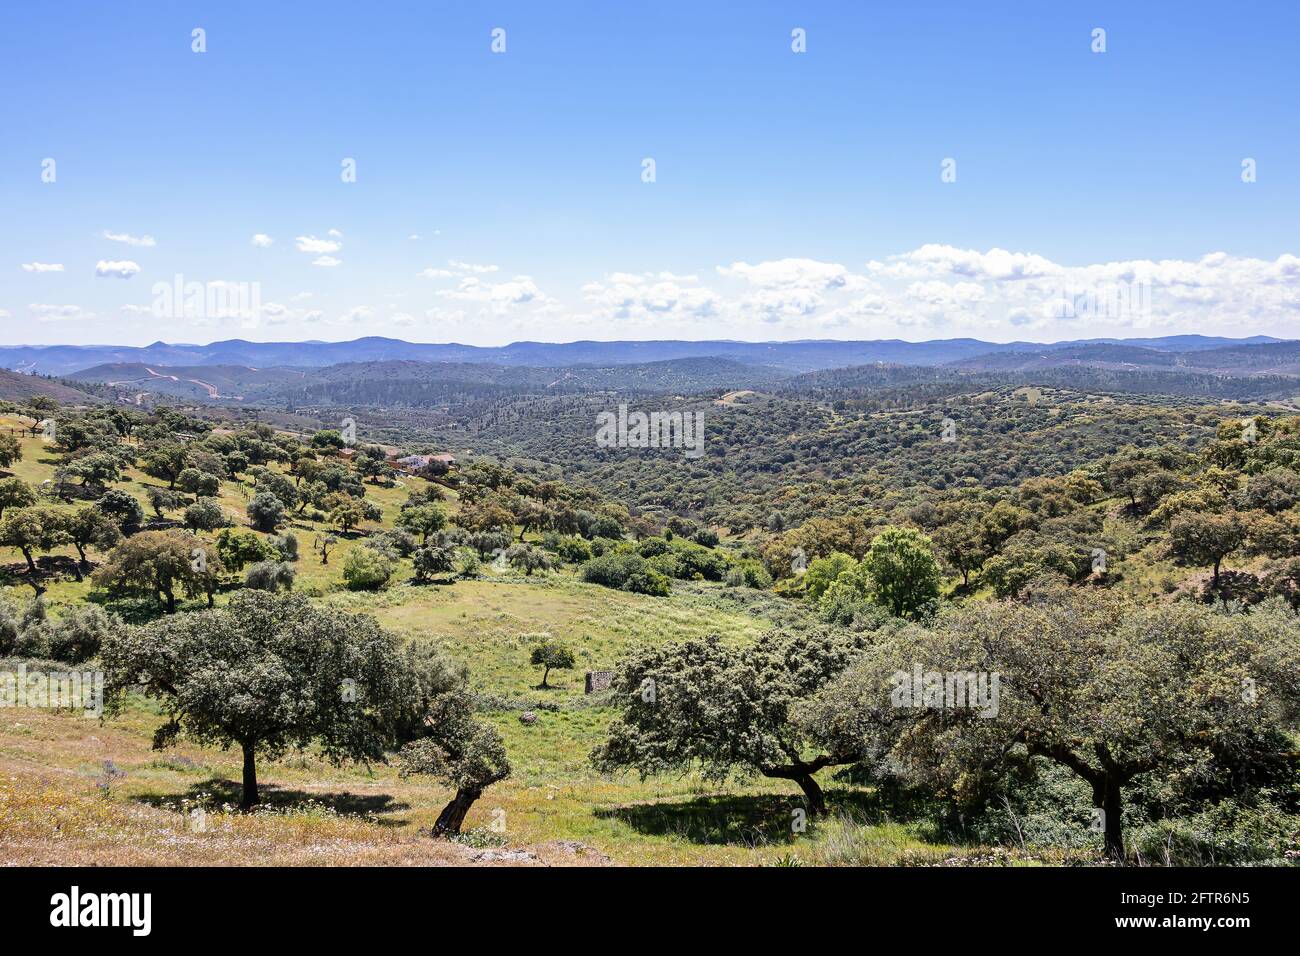 Vista di una dehesa comune in Spagna, con alcuni lecci, querce da sughero Foto Stock